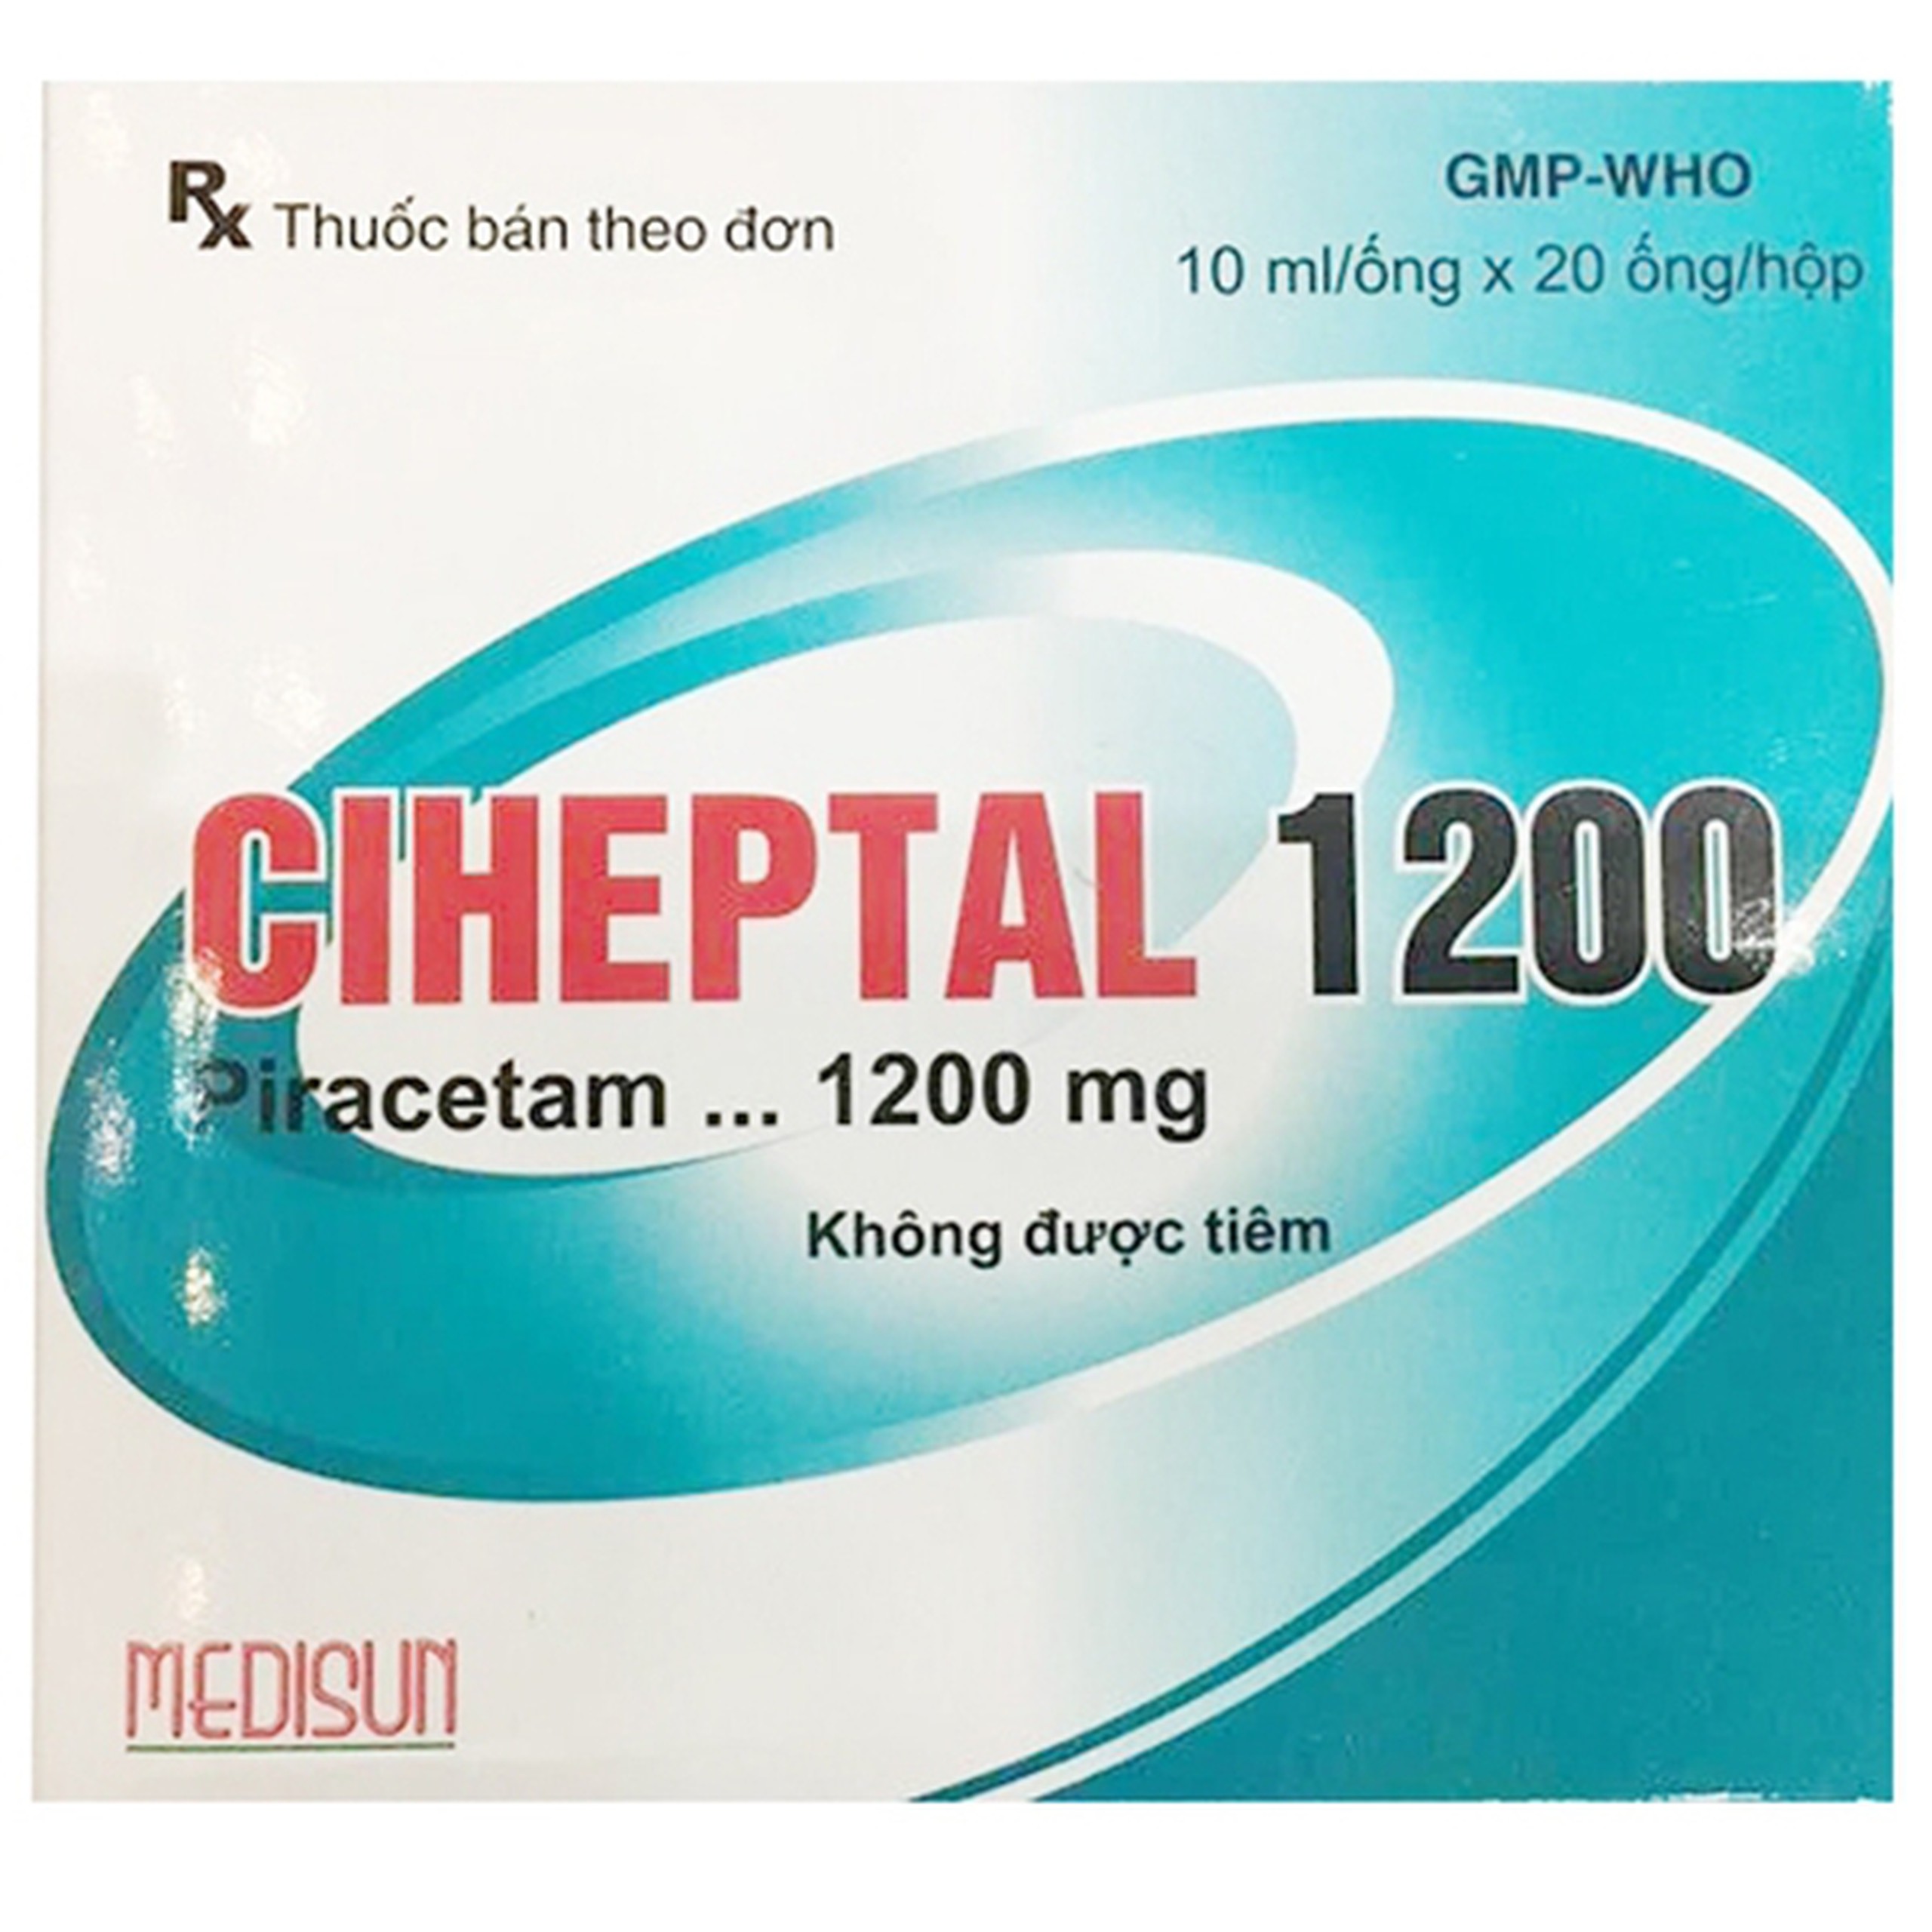 Thuốc Ciheptal 1200 Medisun điều trị triệu chứng rối loạn nhận thức, chóng mặt (20 ống x 10ml)